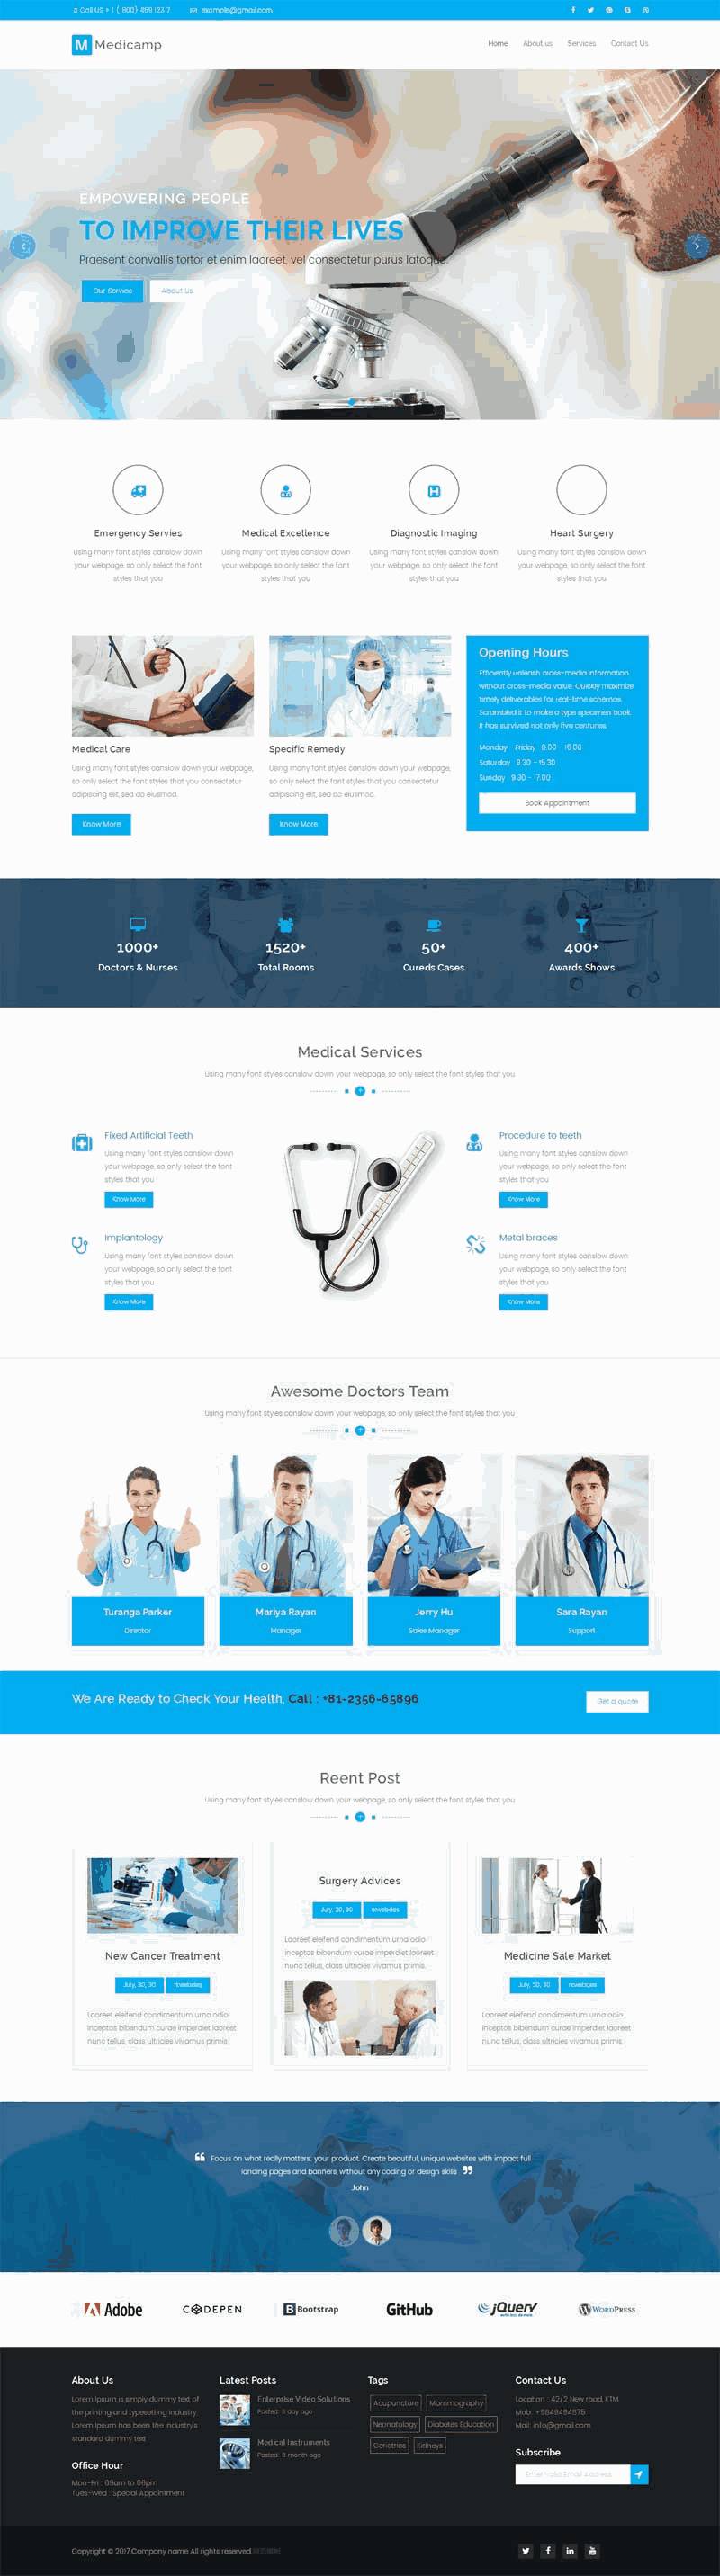 蓝色大气的医疗研究所公司网站Wordpress模板（带手机版）效果图